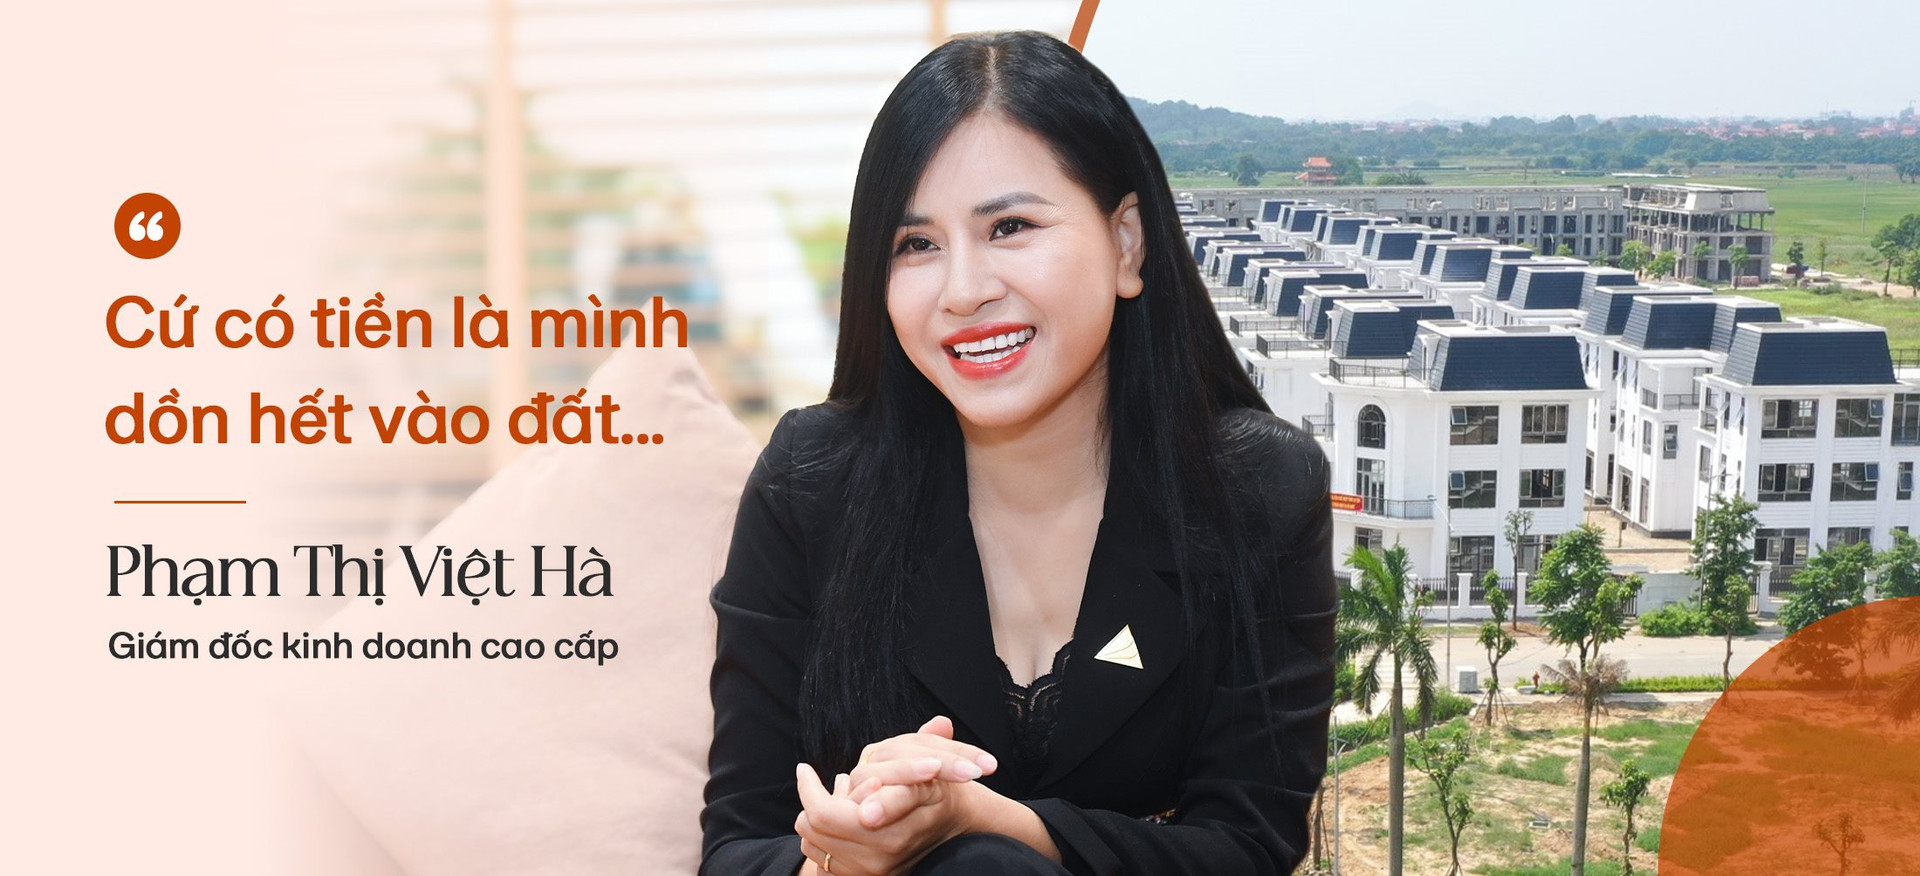 "Nữ tướng" kinh doanh Đất Xanh Miền Bắc Phạm Thị Việt Hà: 18 tuổi đầu tư đất lãi 100 lần, sẵn sàng bỏ vị trí Phó giám đốc đi làm sale bất động sản